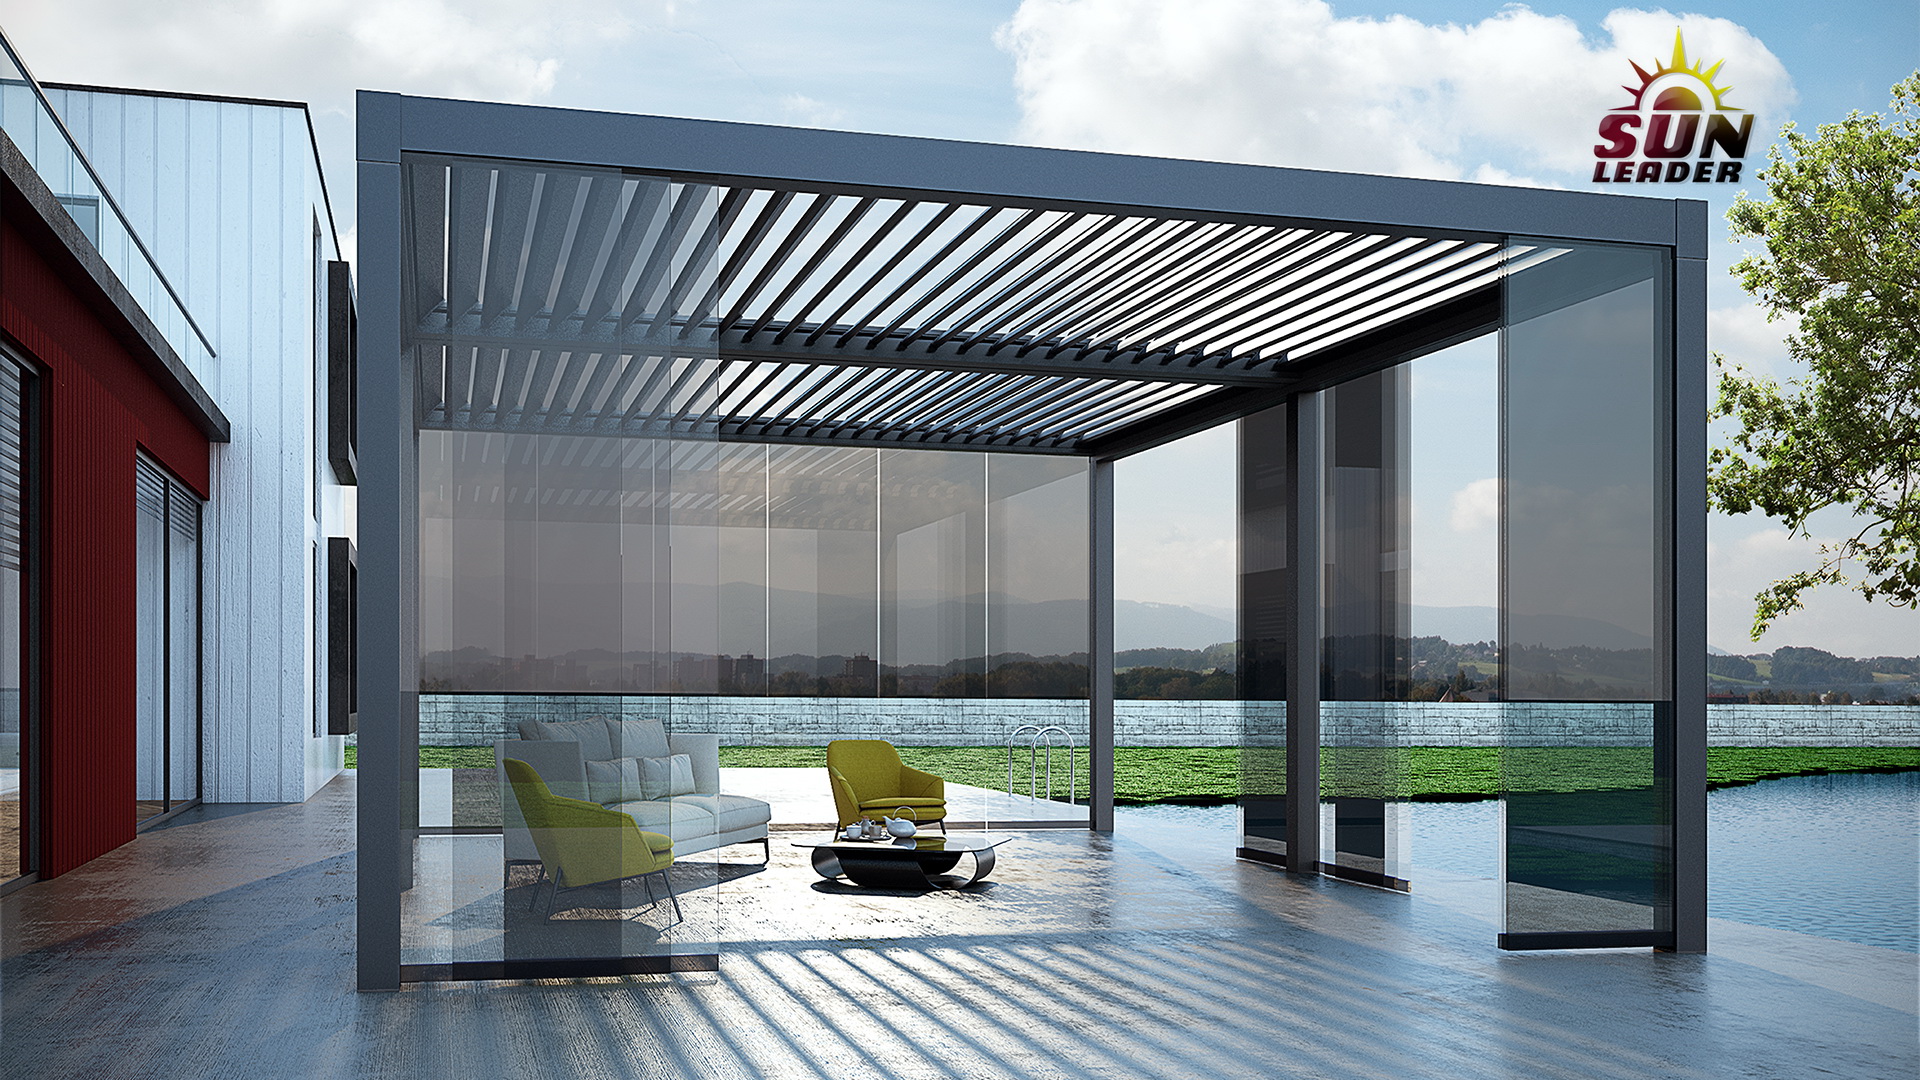 Pergole bioclimatice cu lamele de aluminiu pentru terase. Pergole de aluminiu Sun Leader